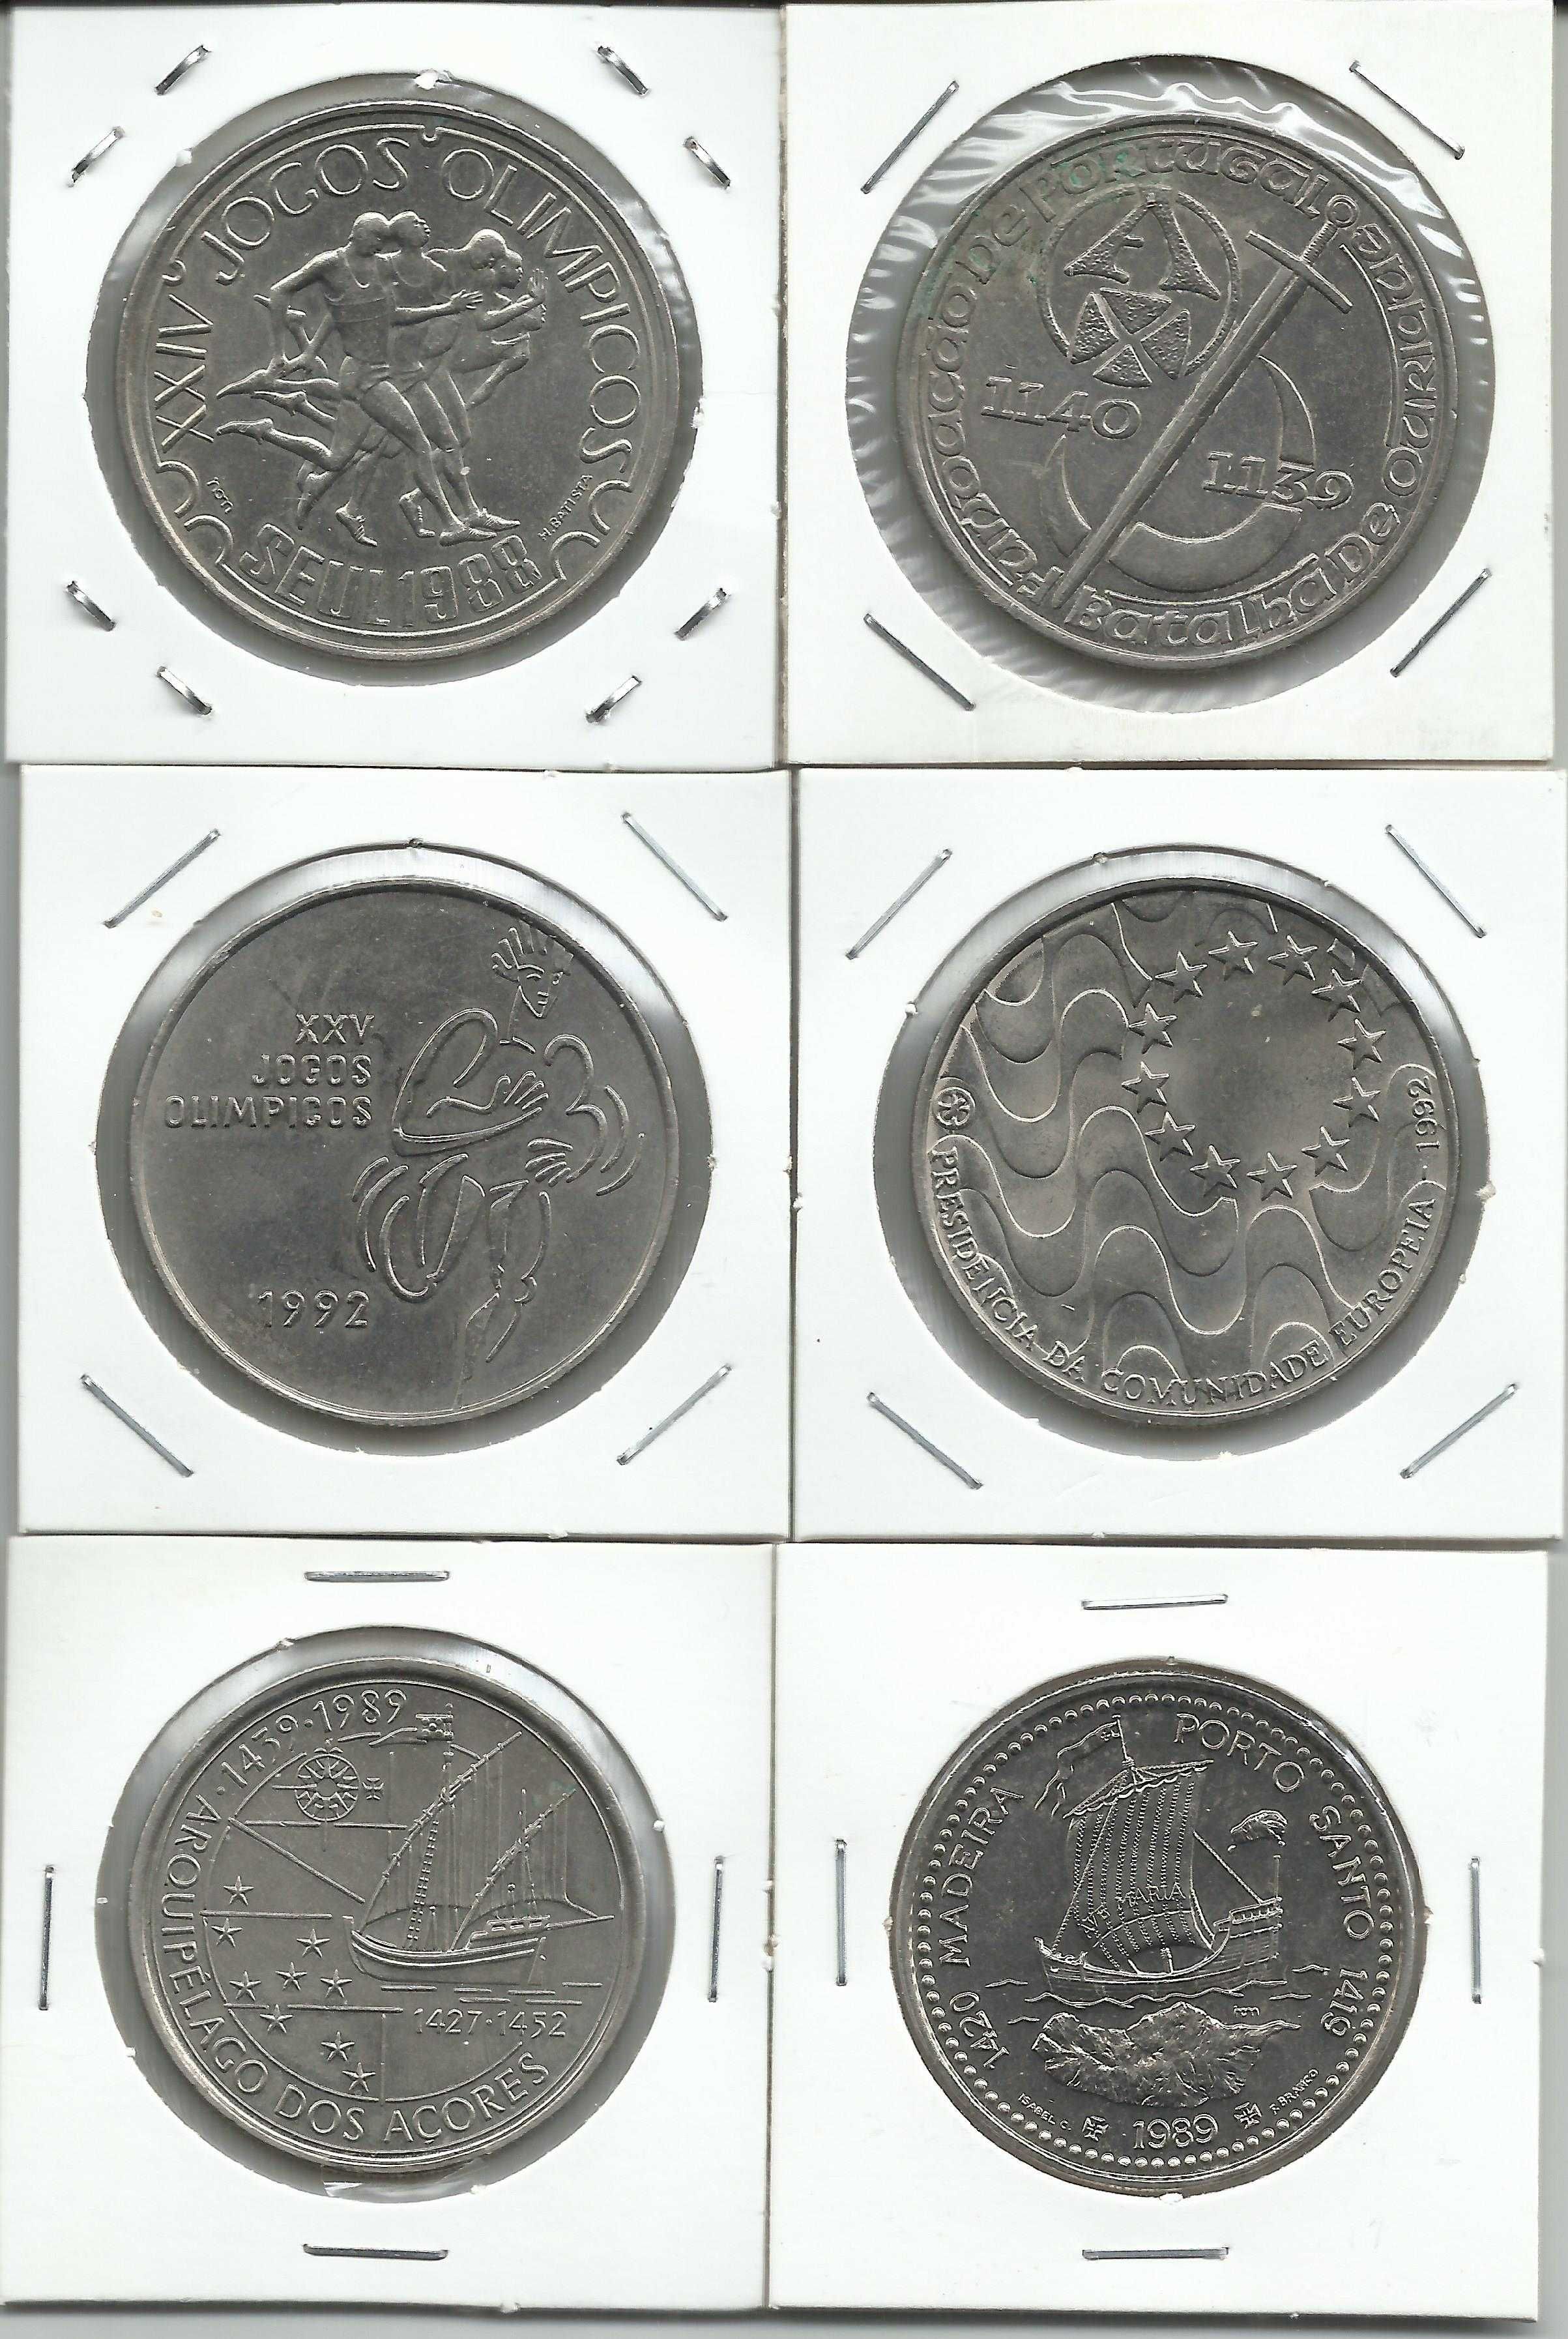 6 moedas portuguesas comemorativas - 2 X 100$, 2 X200$ e 2 X250$